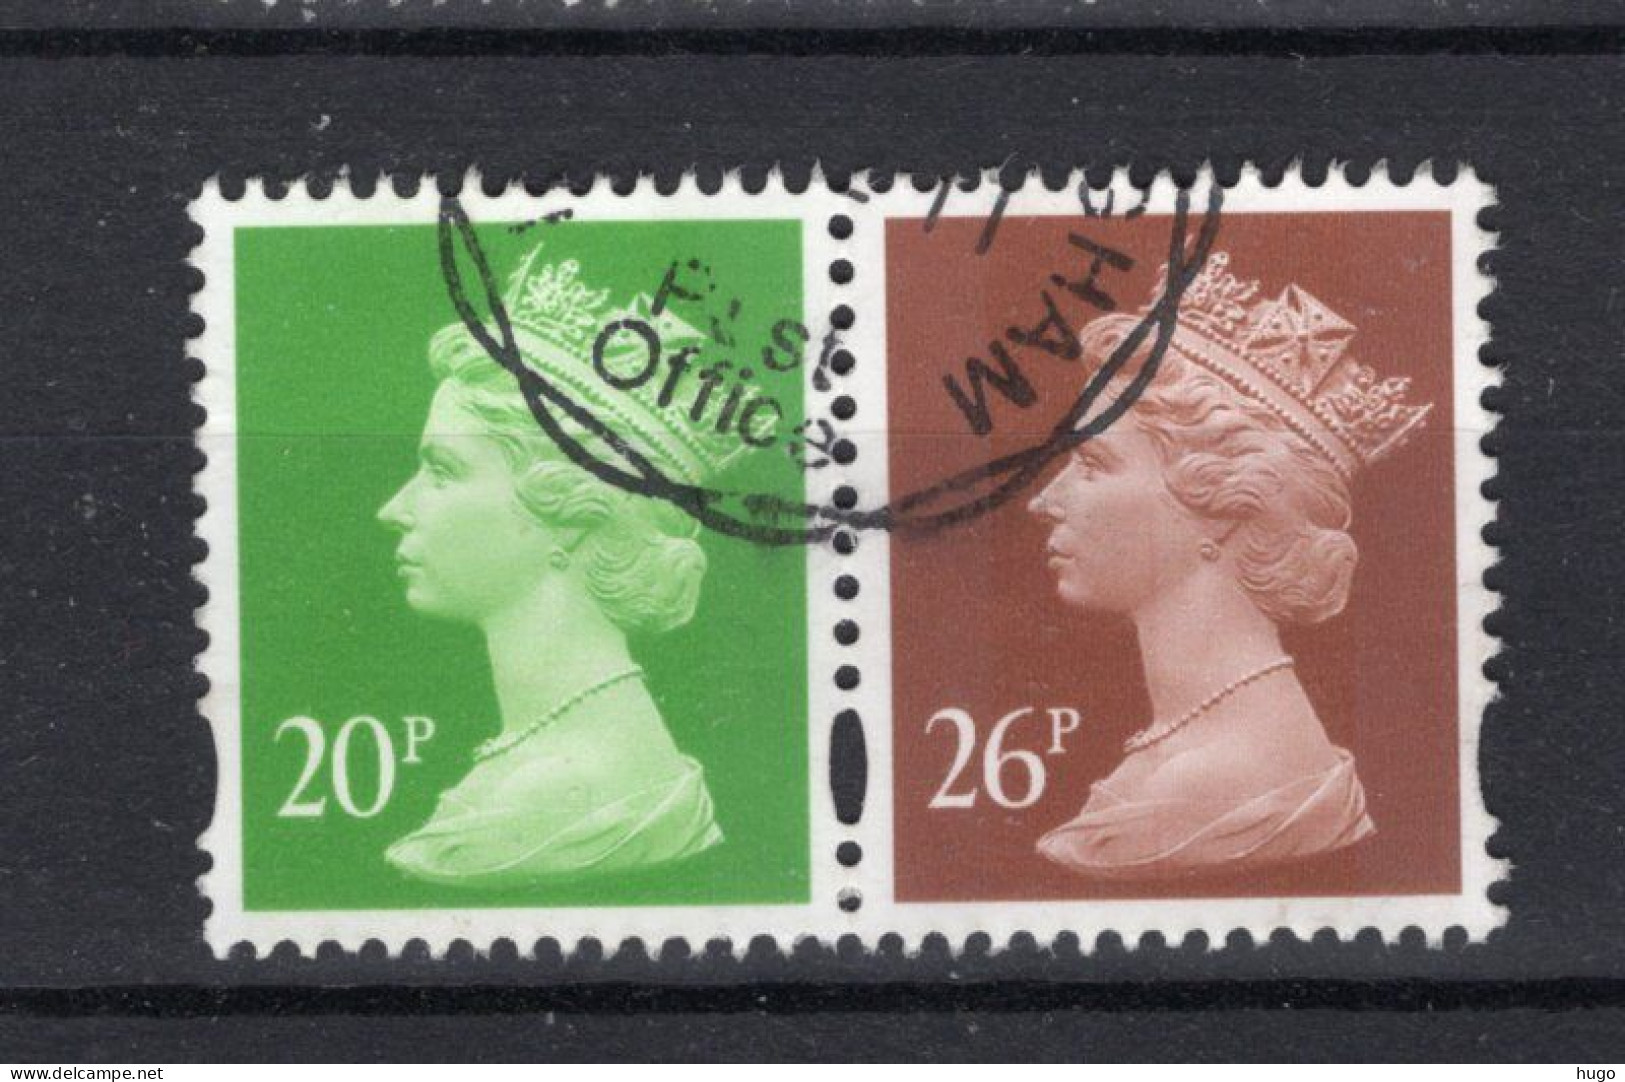 GROOT BRITTANIE Yt. 1891/1892° Gestempeld 1996 -1 - Used Stamps